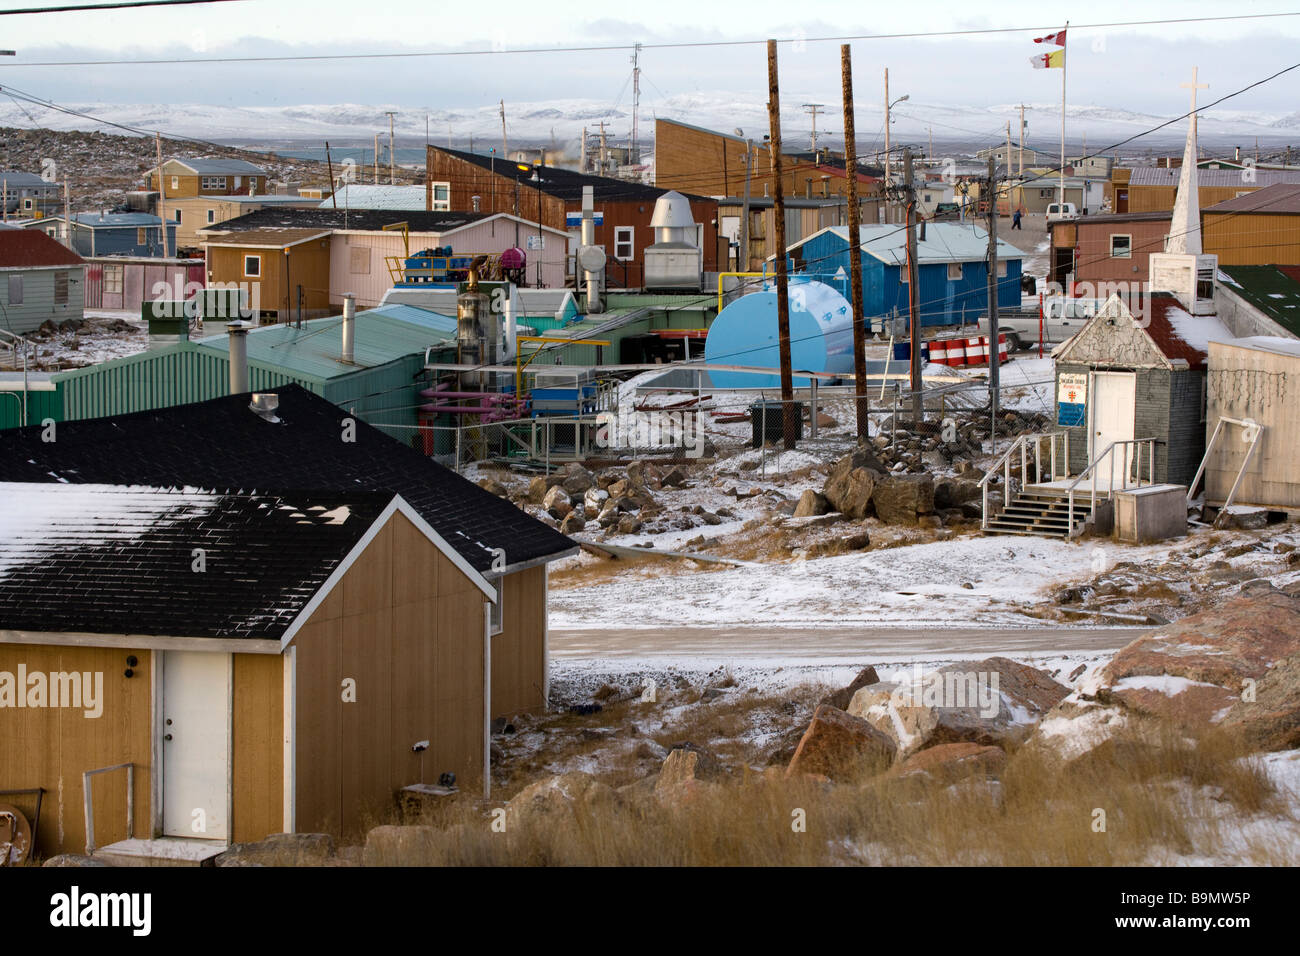 Los edificios tradicionales en Taloyoak asentamiento inuit de Nunavut, vista elevada, el ártico canadiense, Canadá Foto de stock